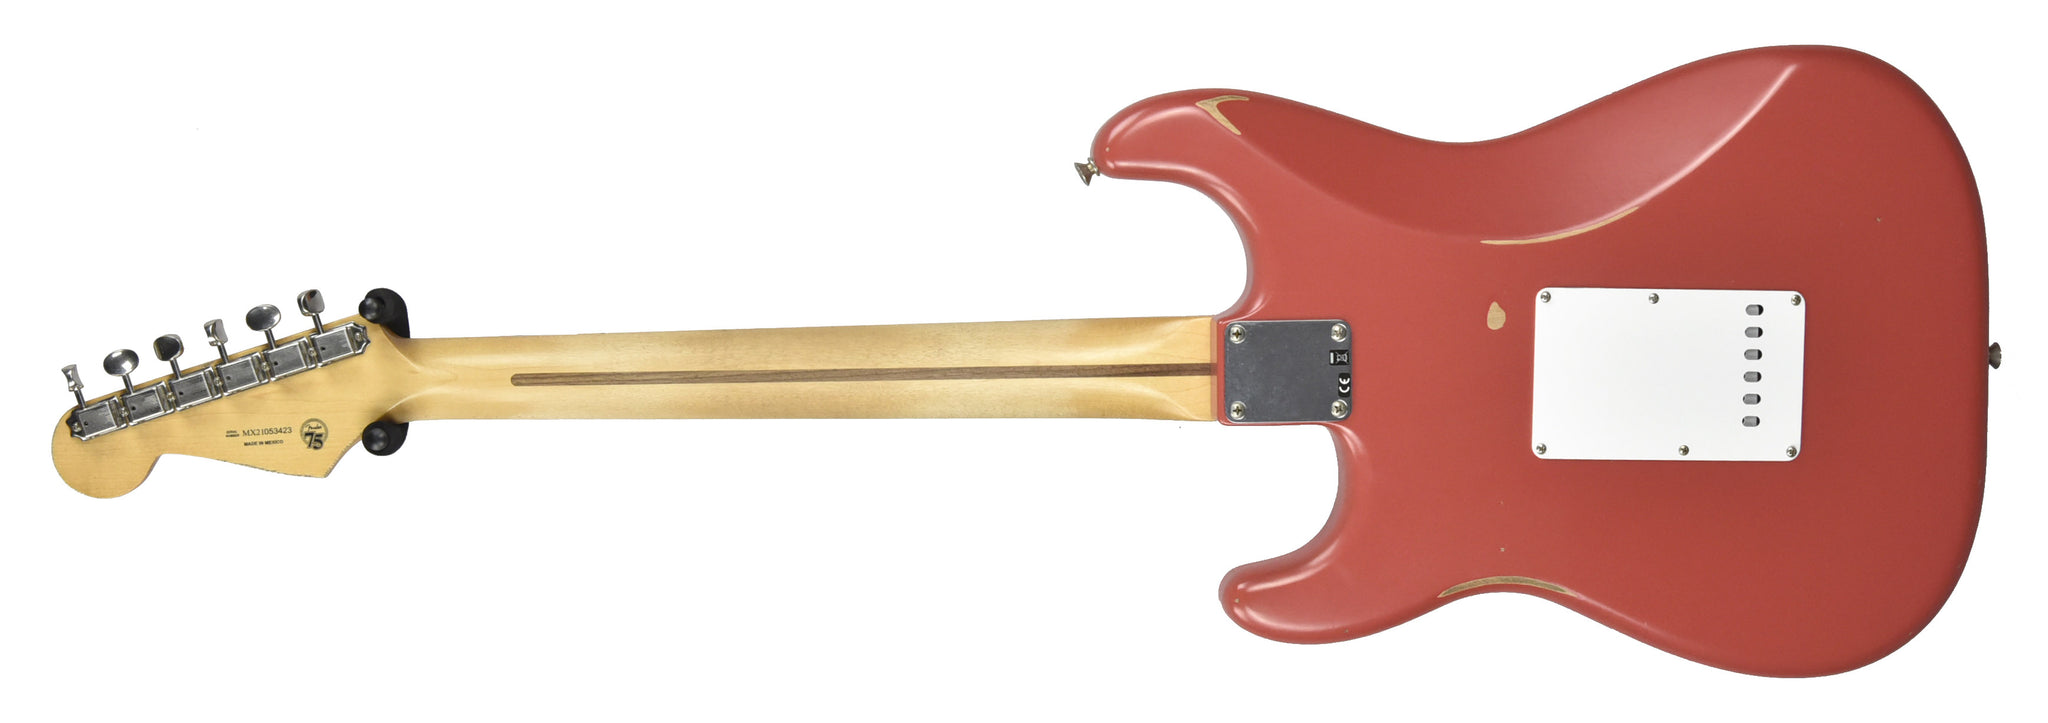 Fender Stratocaster Worn Red in Road Fiesta MX21053423 Vintera 50s